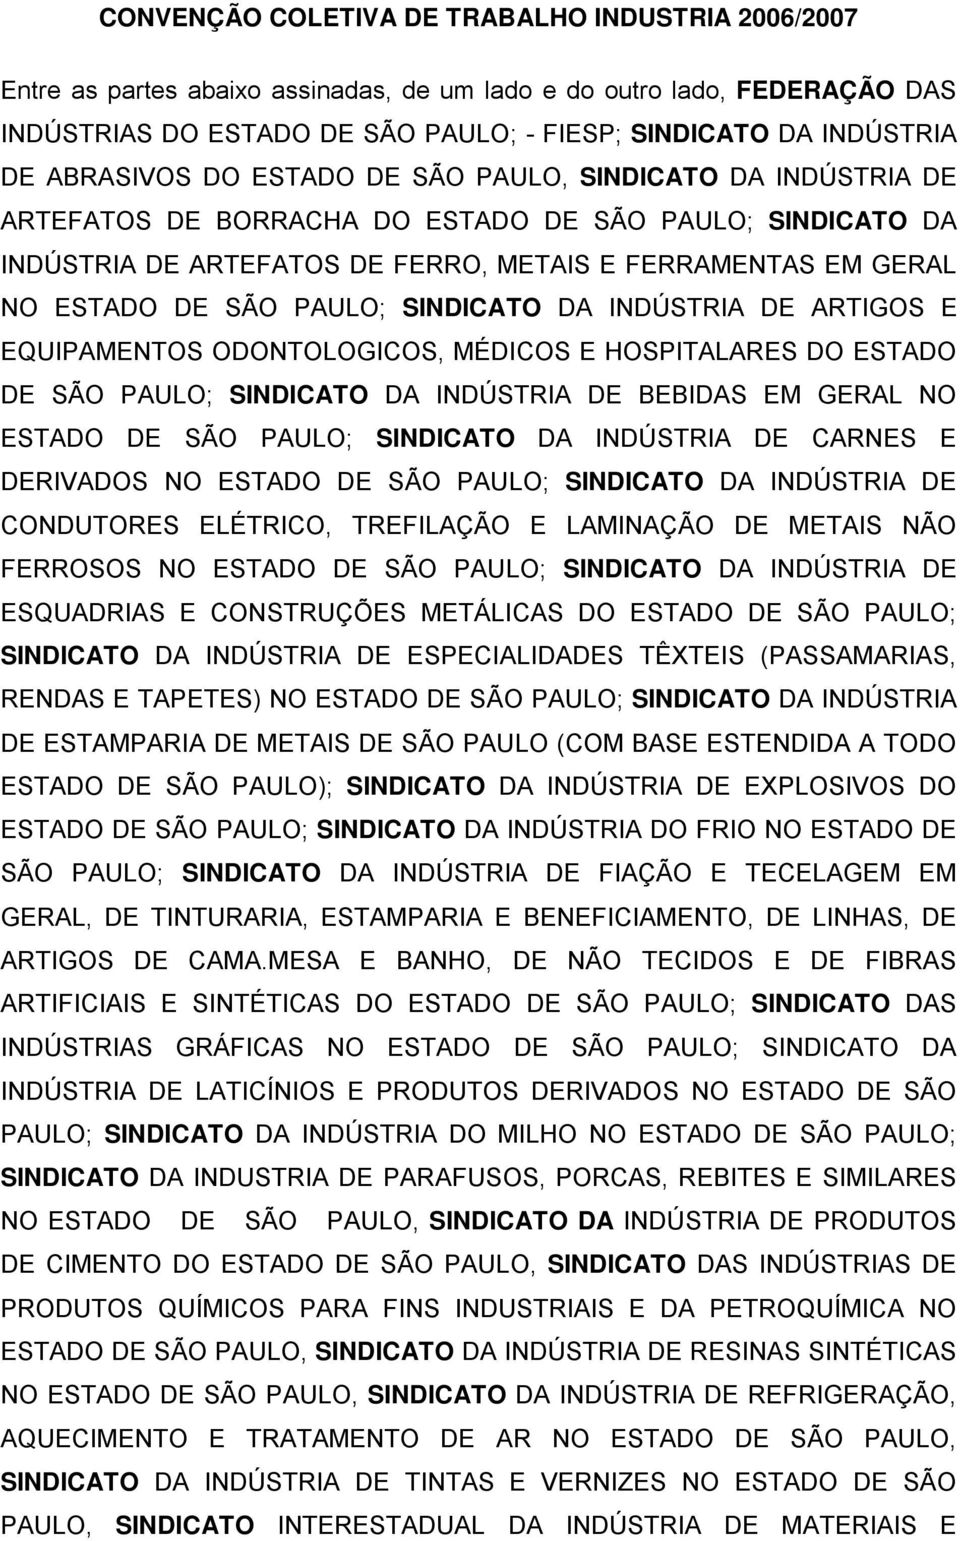 PAULO; SINDICATO DA INDÚSTRIA DE ARTIGOS E EQUIPAMENTOS ODONTOLOGICOS, MÉDICOS E HOSPITALARES DO ESTADO DE SÃO PAULO; SINDICATO DA INDÚSTRIA DE BEBIDAS EM GERAL NO ESTADO DE SÃO PAULO; SINDICATO DA